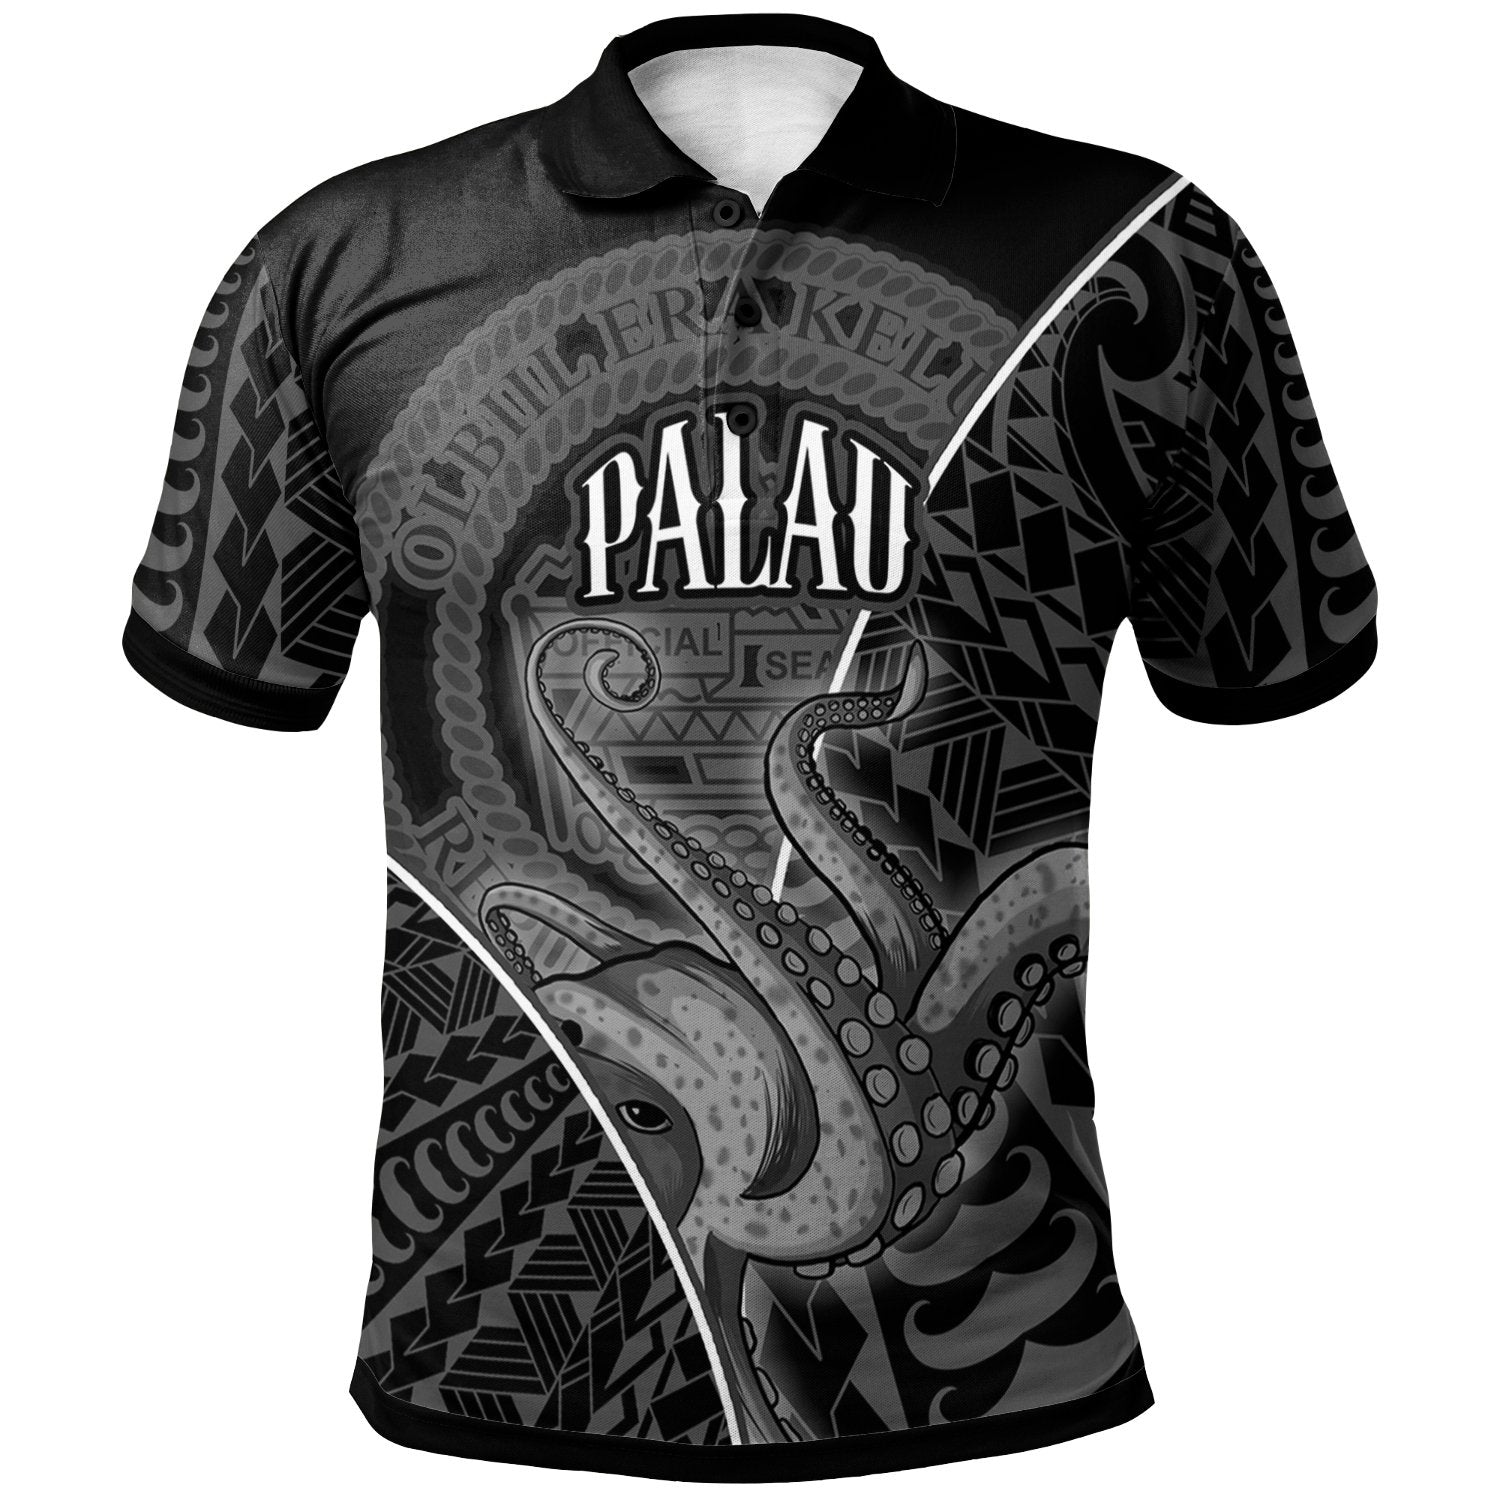 Palau Polo Shirt Octopus Style White Color Unisex White - Polynesian Pride